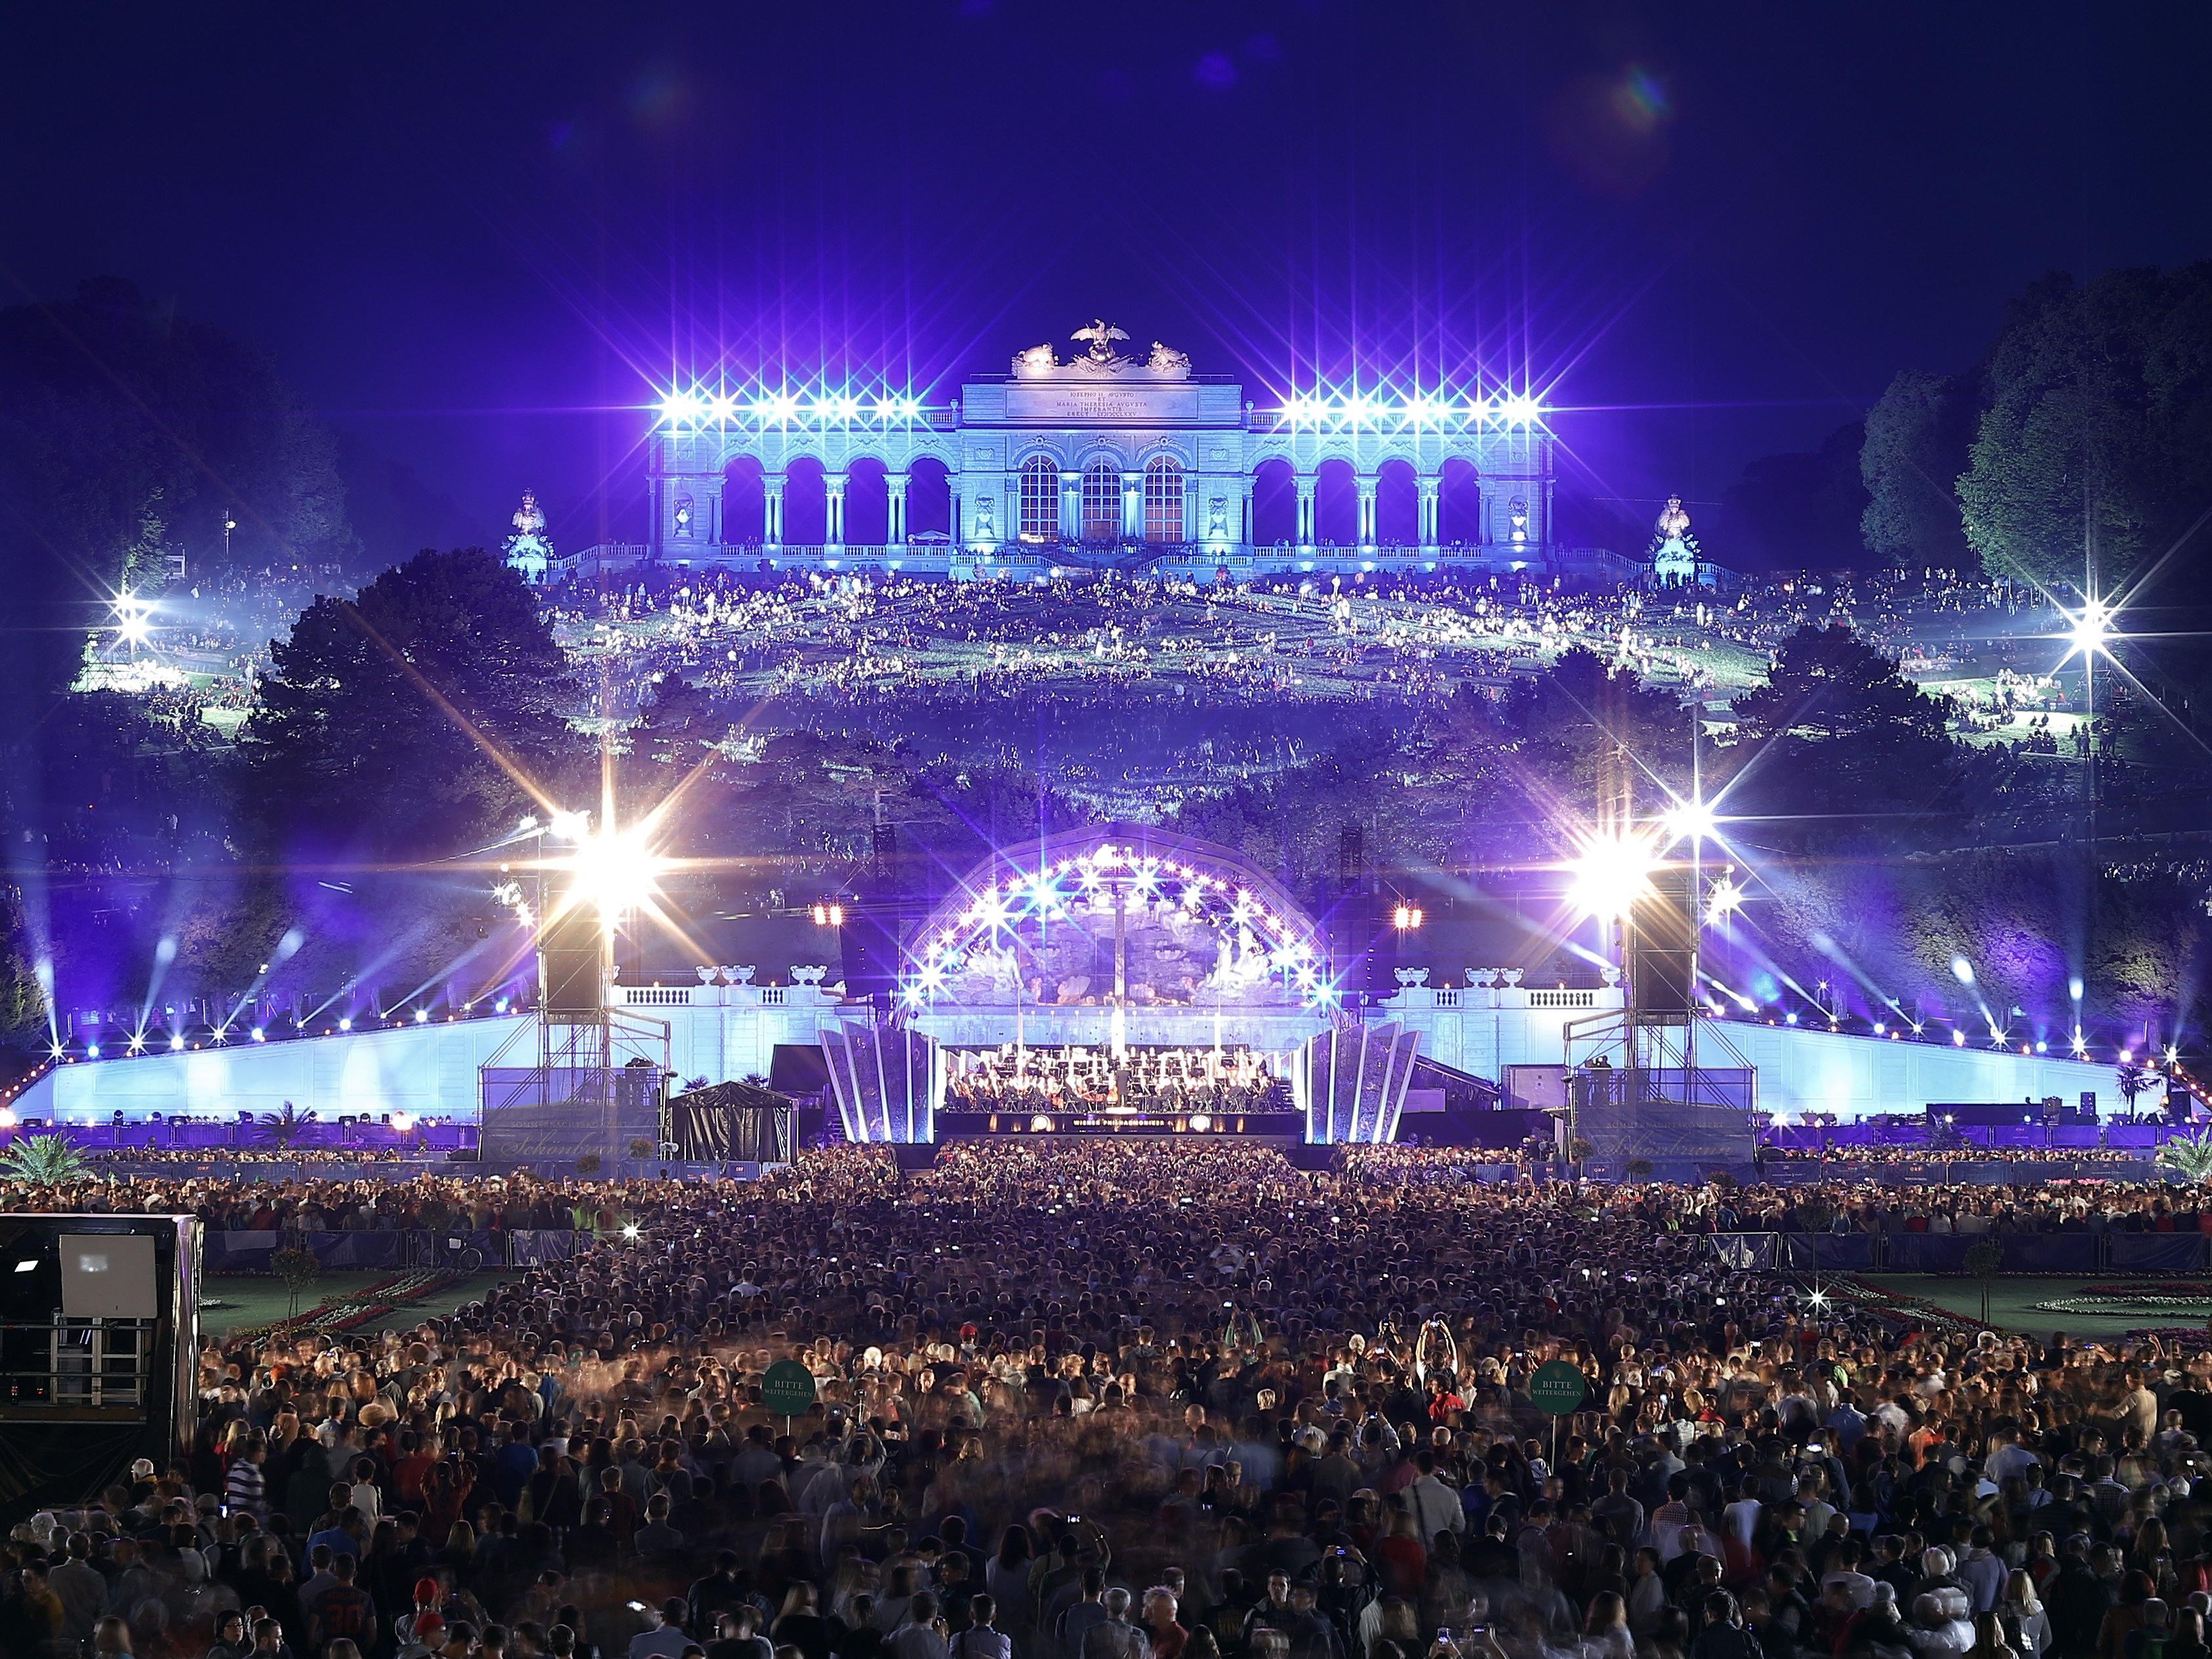 Das Sommernachtskonzert der Wiener Philharmoniker findet heuer am 25. Mai statt.